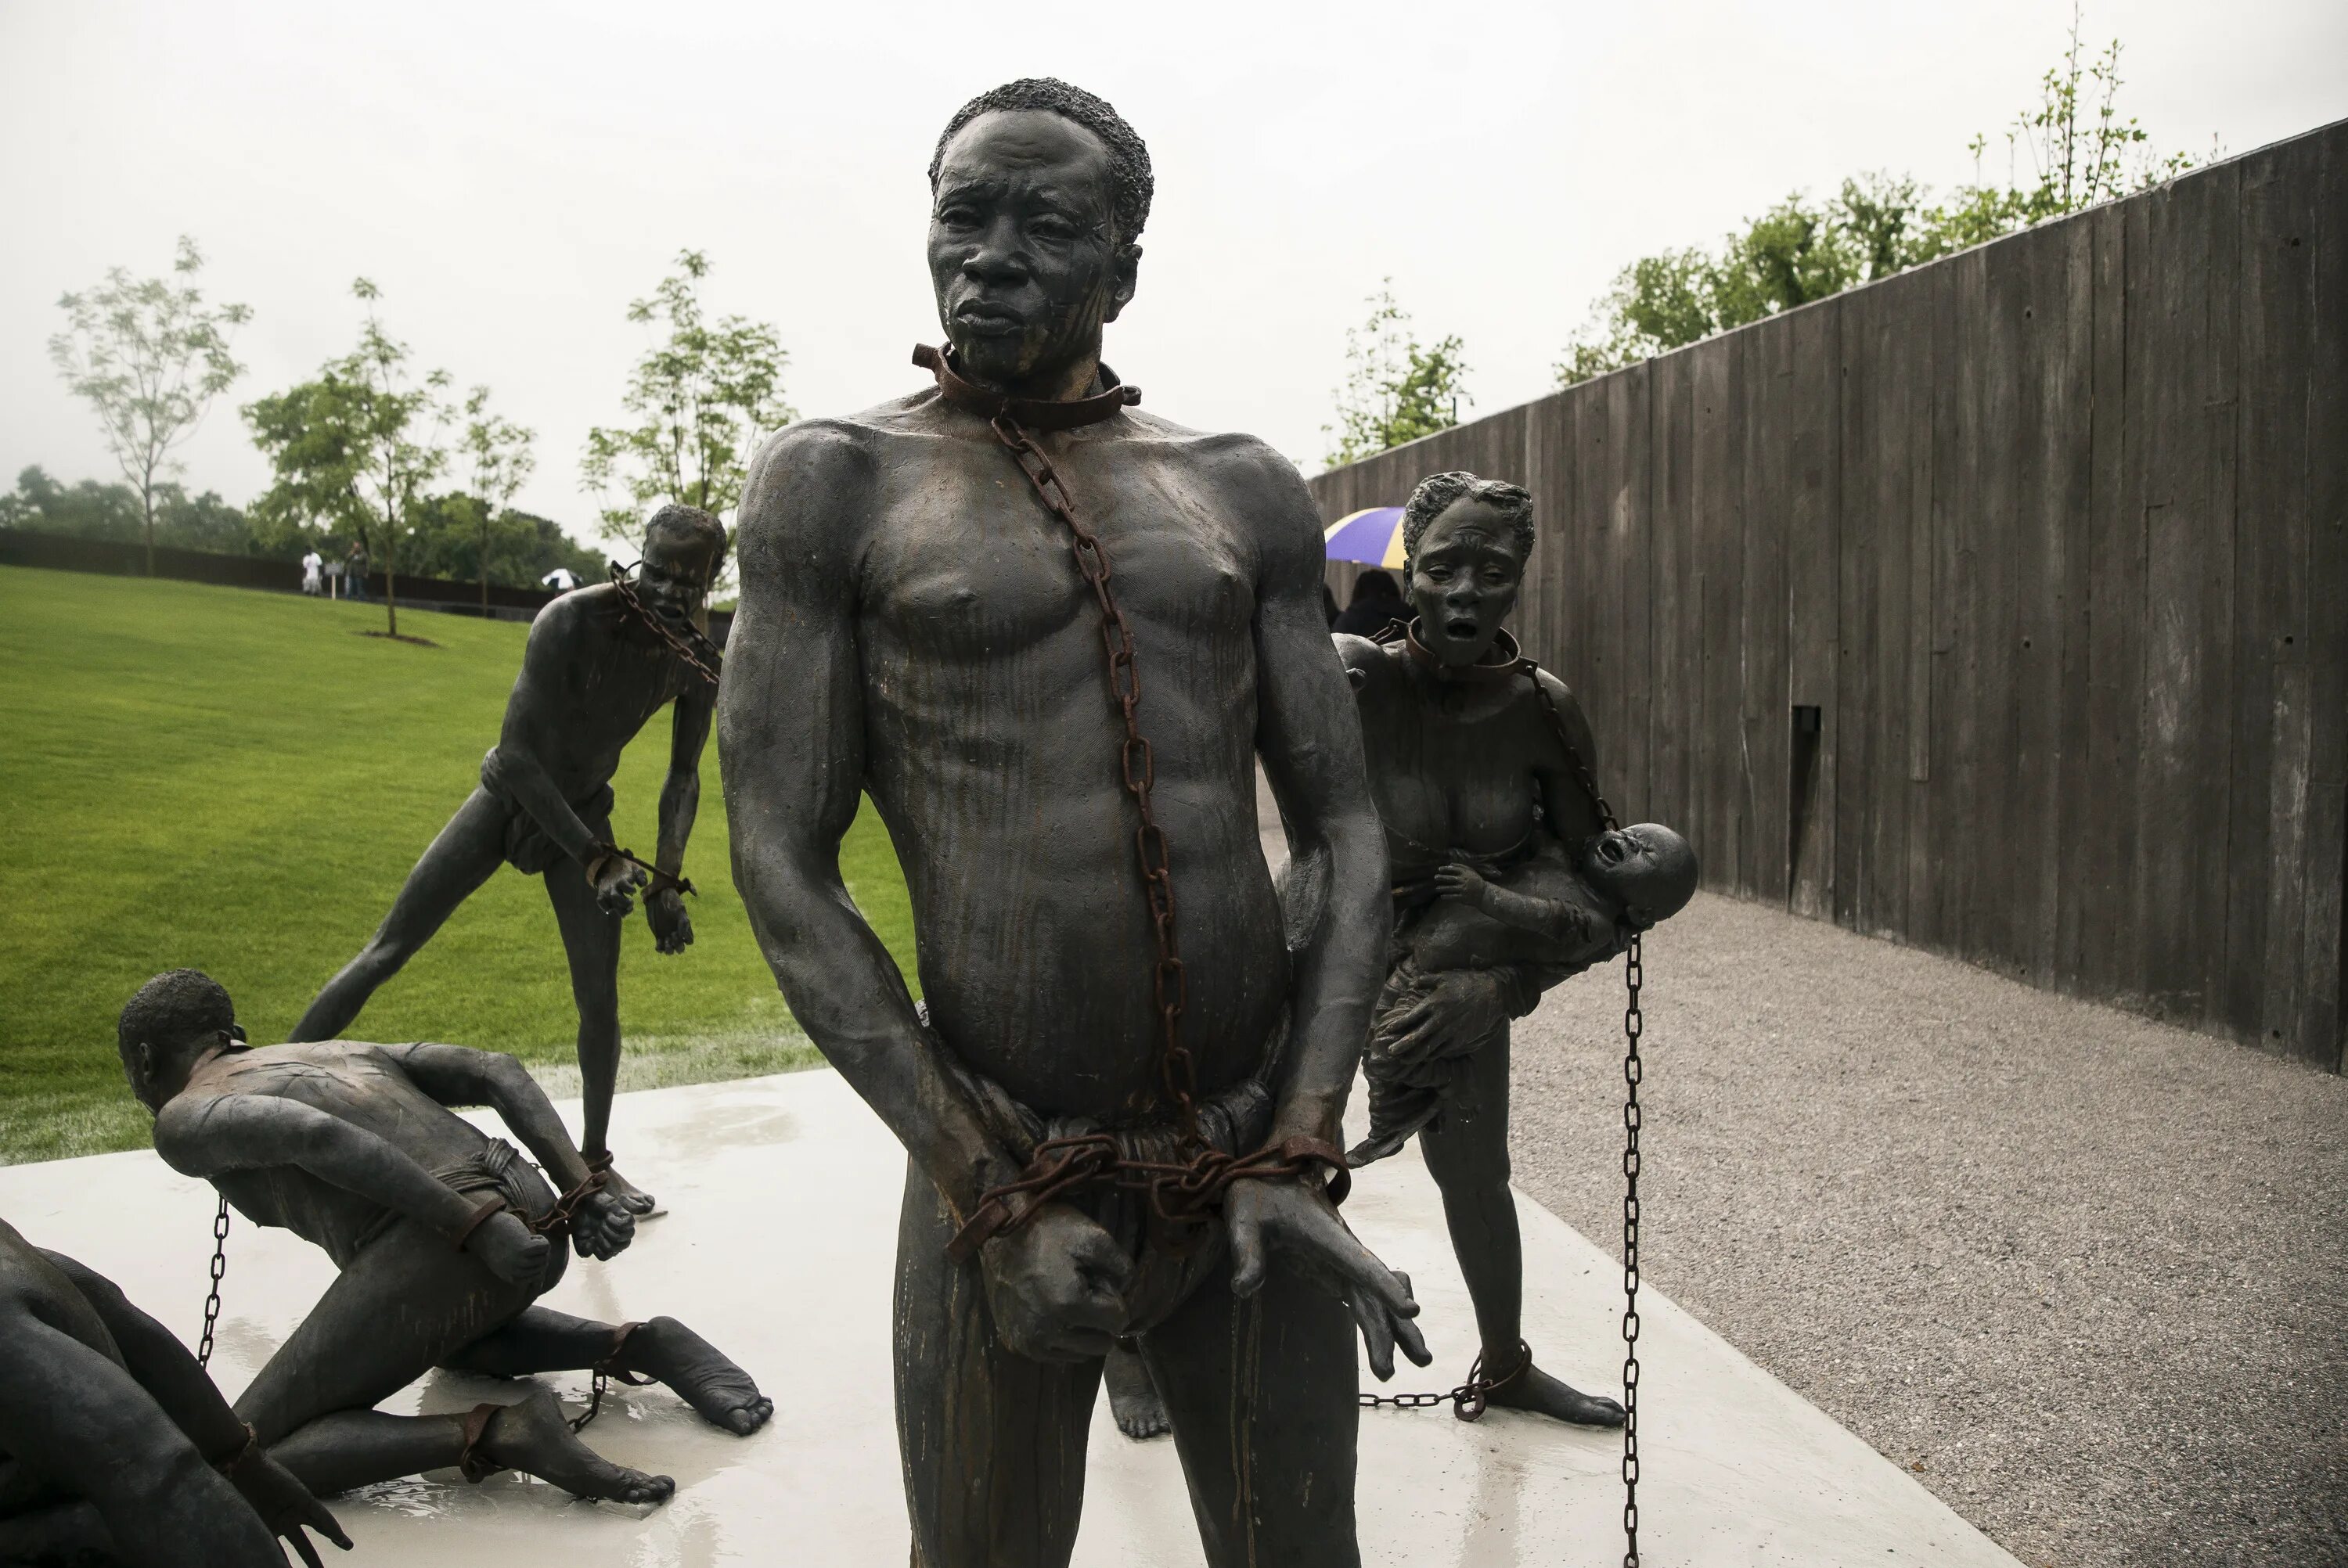 Мемориал жертвам линчеваний в Монтгомери. Статуя негра. Памятник негру. Темнокожий раб